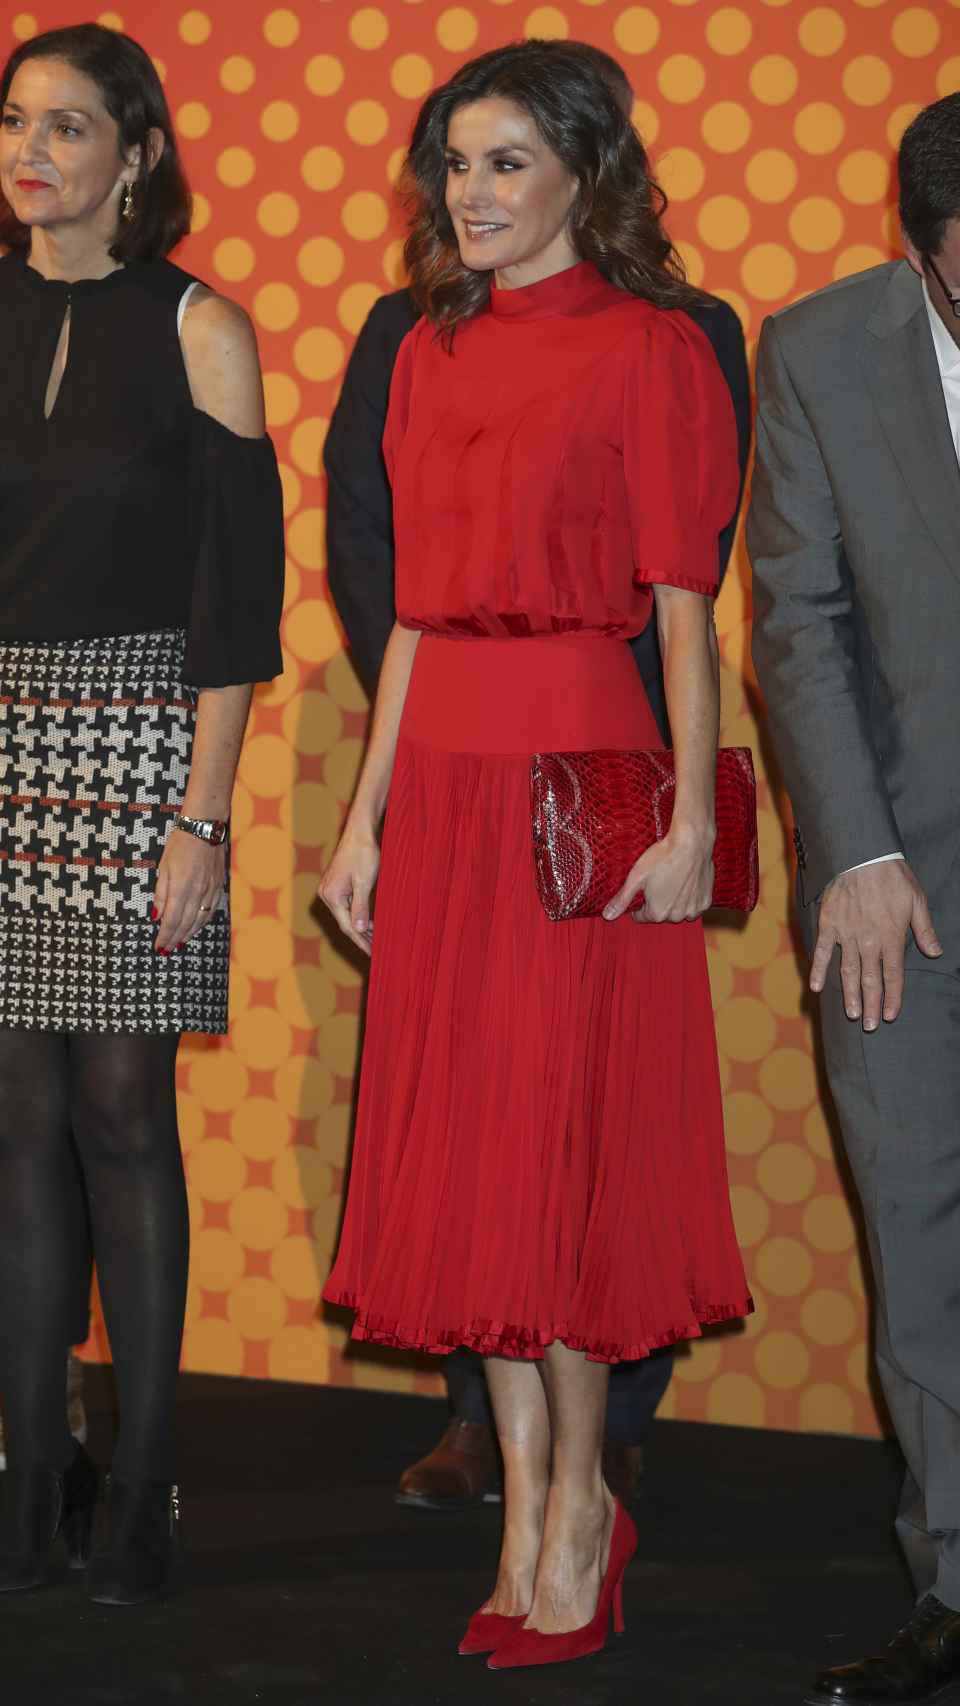 La reina Letizia en el evento, con el vestido rojo.